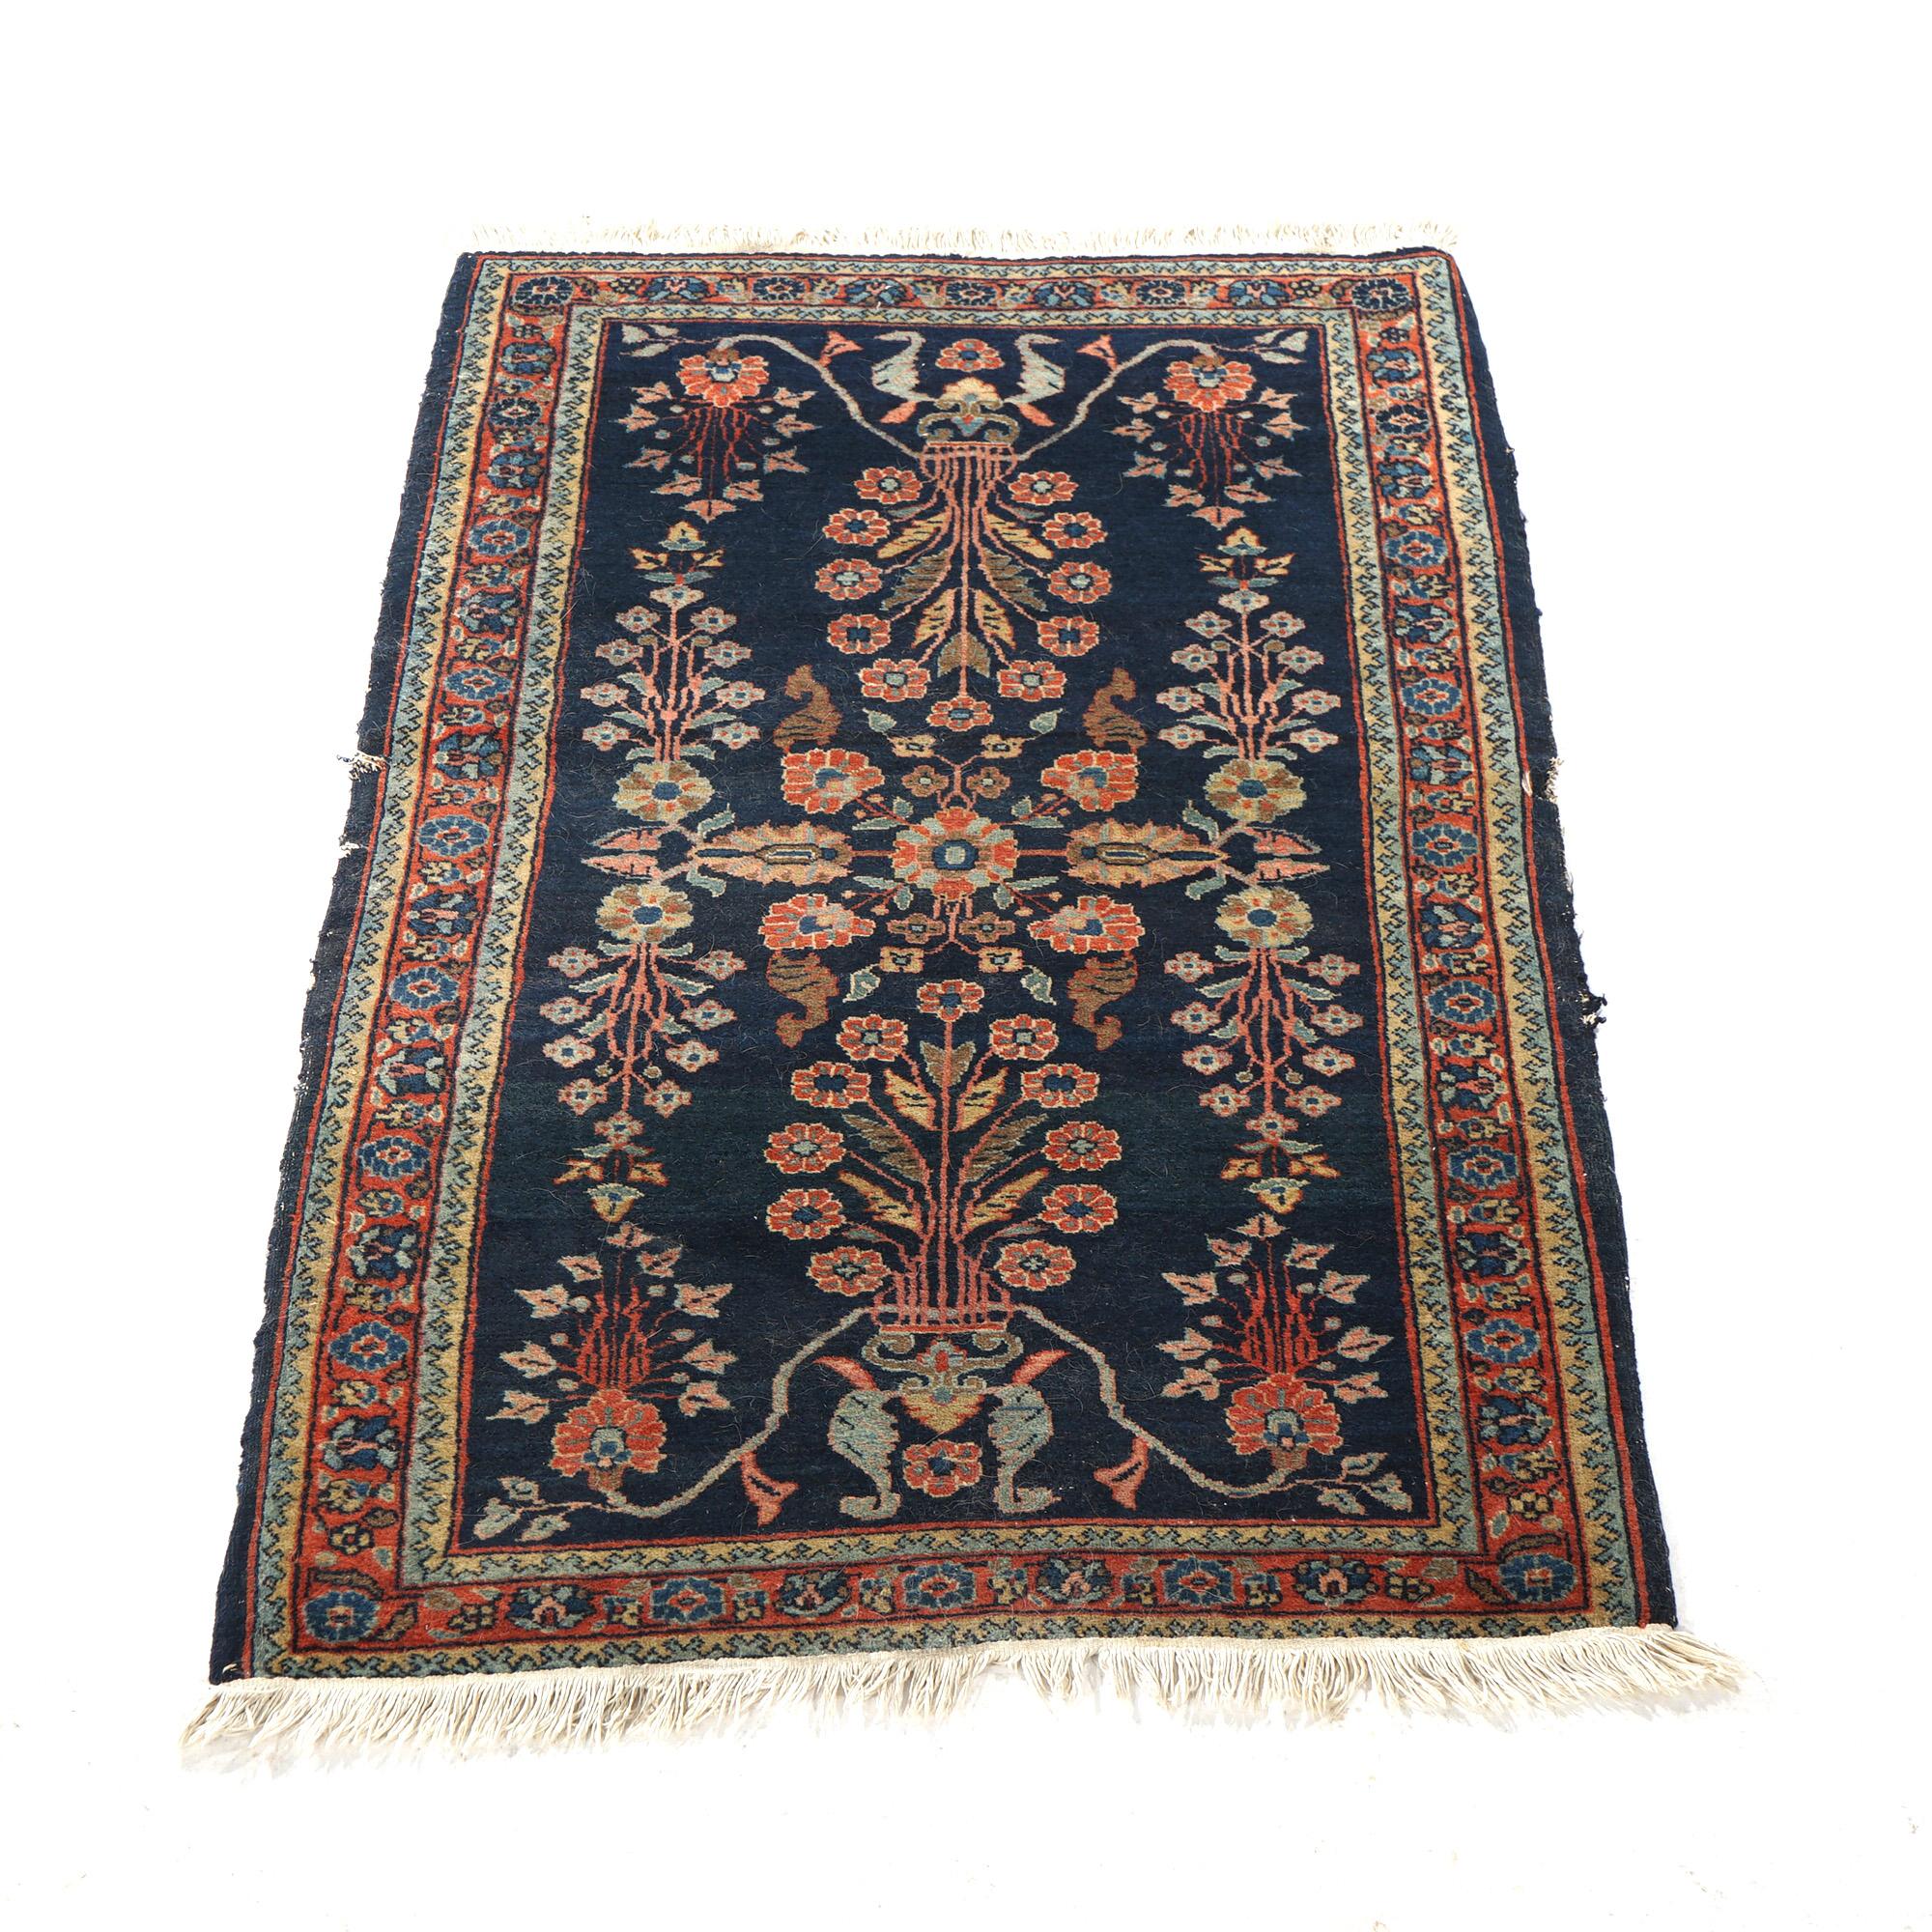 Ancien tapis oriental Sarouk bleu à fleurs stylisées, Circa 1920

Mesures - 49.5